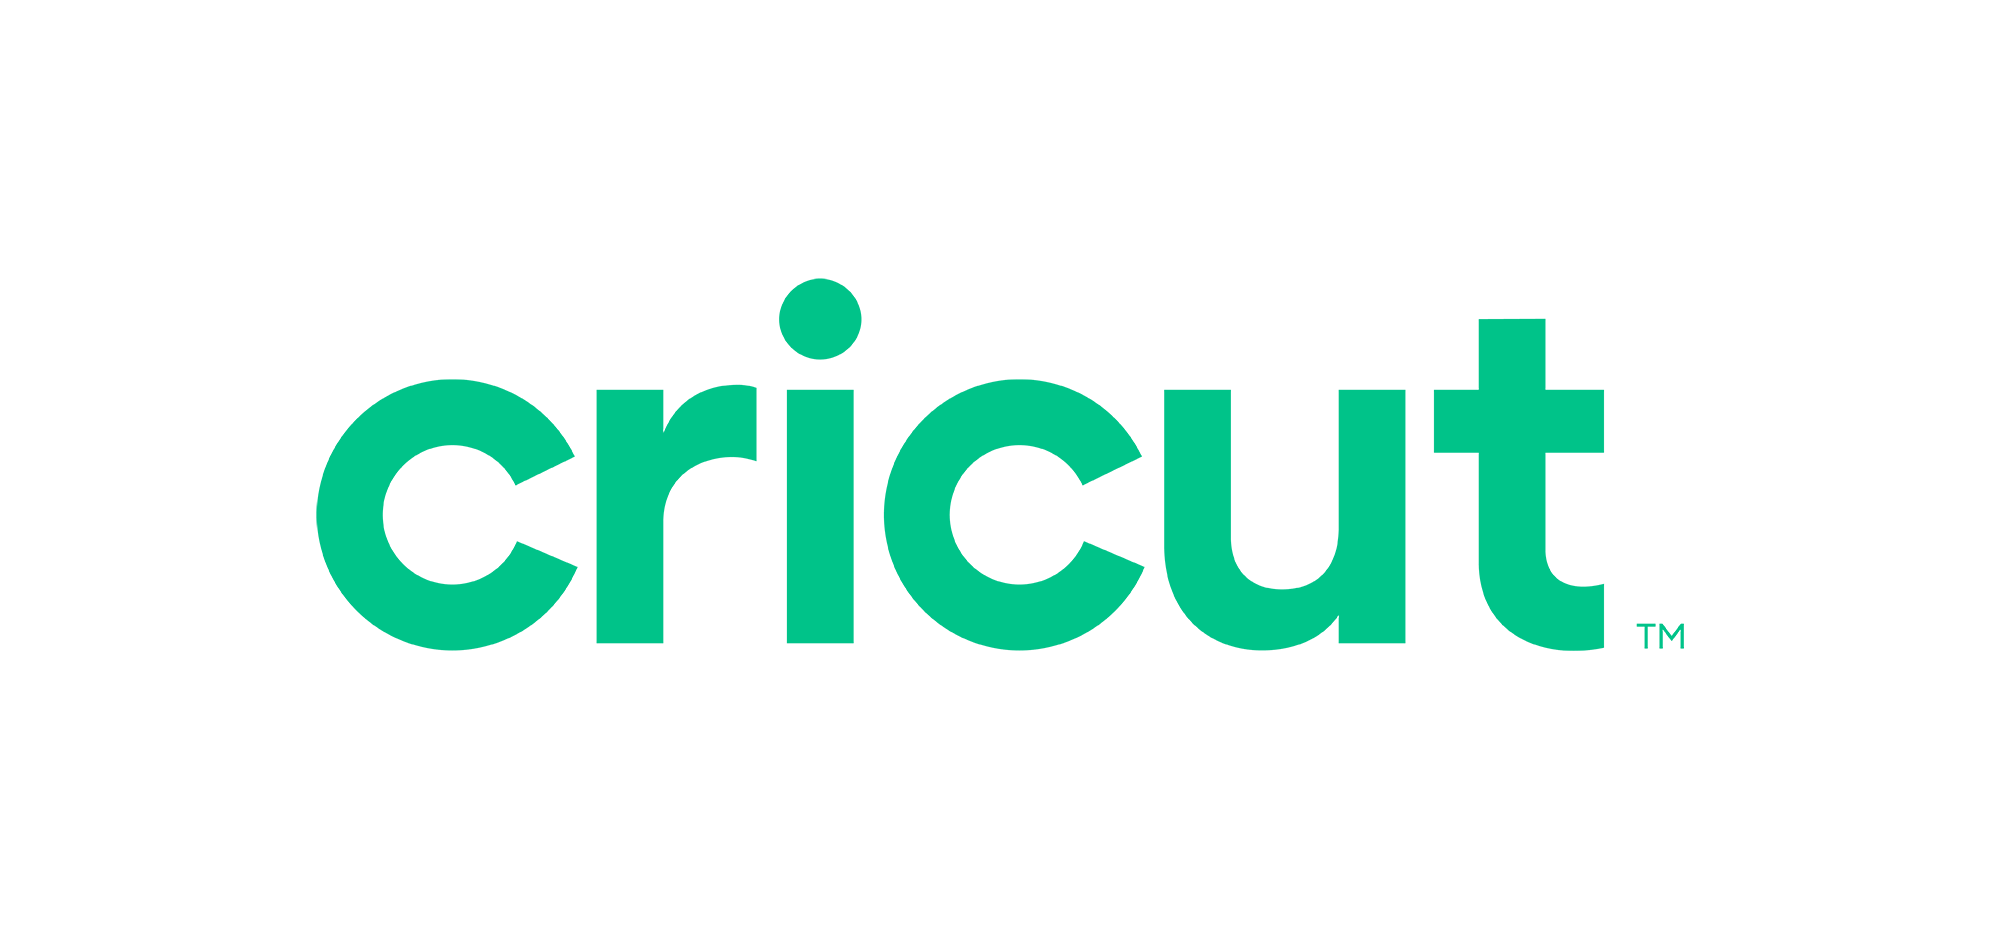 Cricut Inc